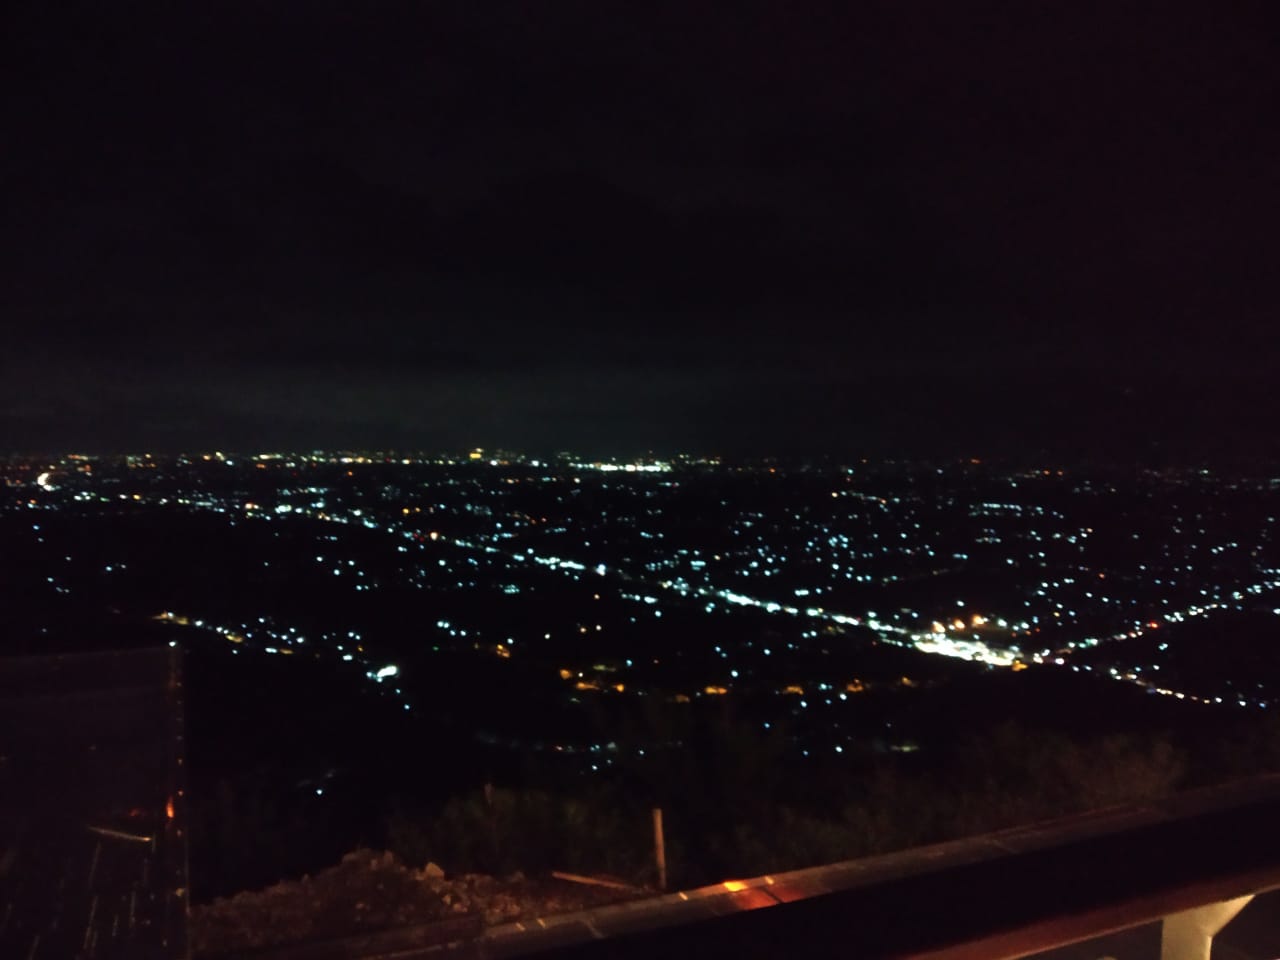 Heha Sky View: Wisata selfie di ketinggian di Yogyakarta